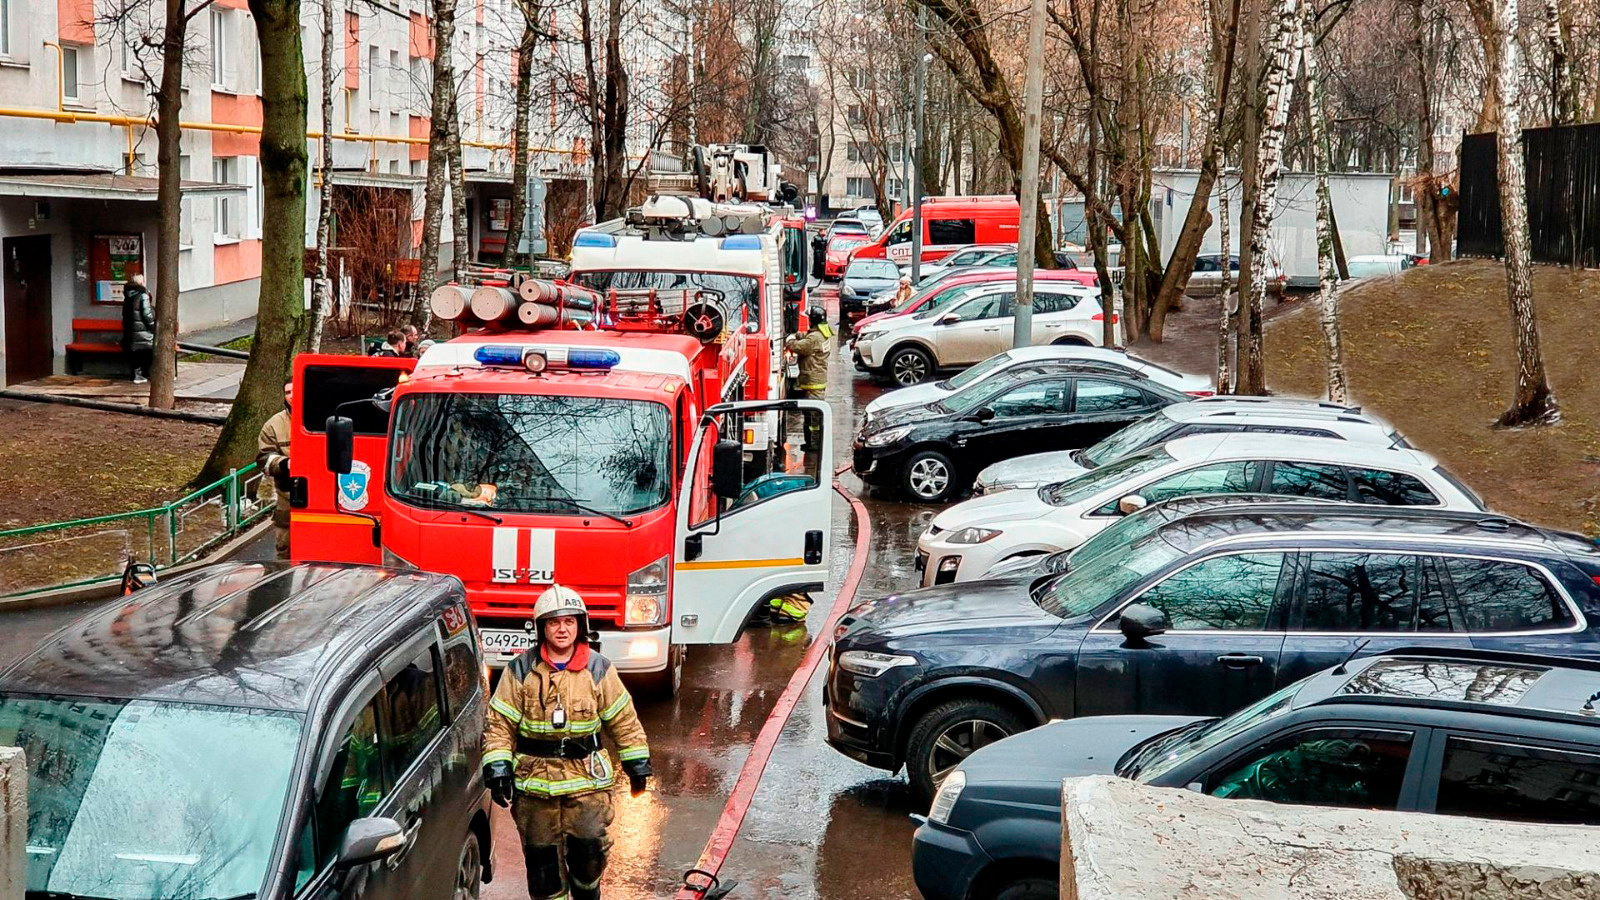 Помните! Парковка автомобиля на площадке для пожарной техники может стать причиной гибели людей.